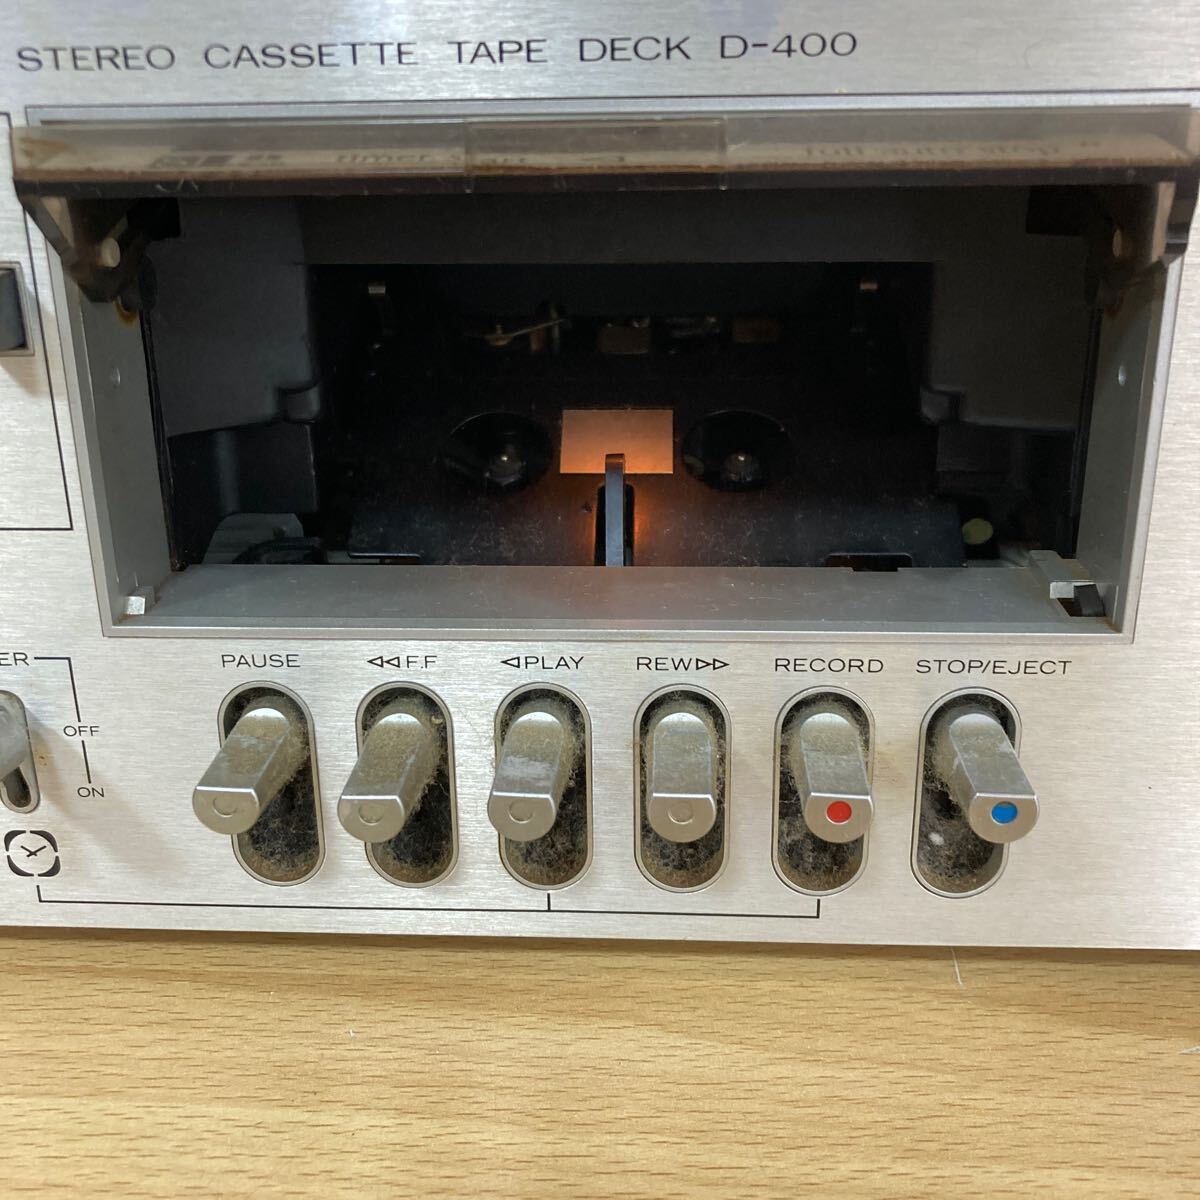 HITACHI 日立 Lo-D D-400 STEREO CASSETTE TAPE DECK カセット デッキ オーディオ機器 通電のみ確認済み 5 カ 5802の画像3